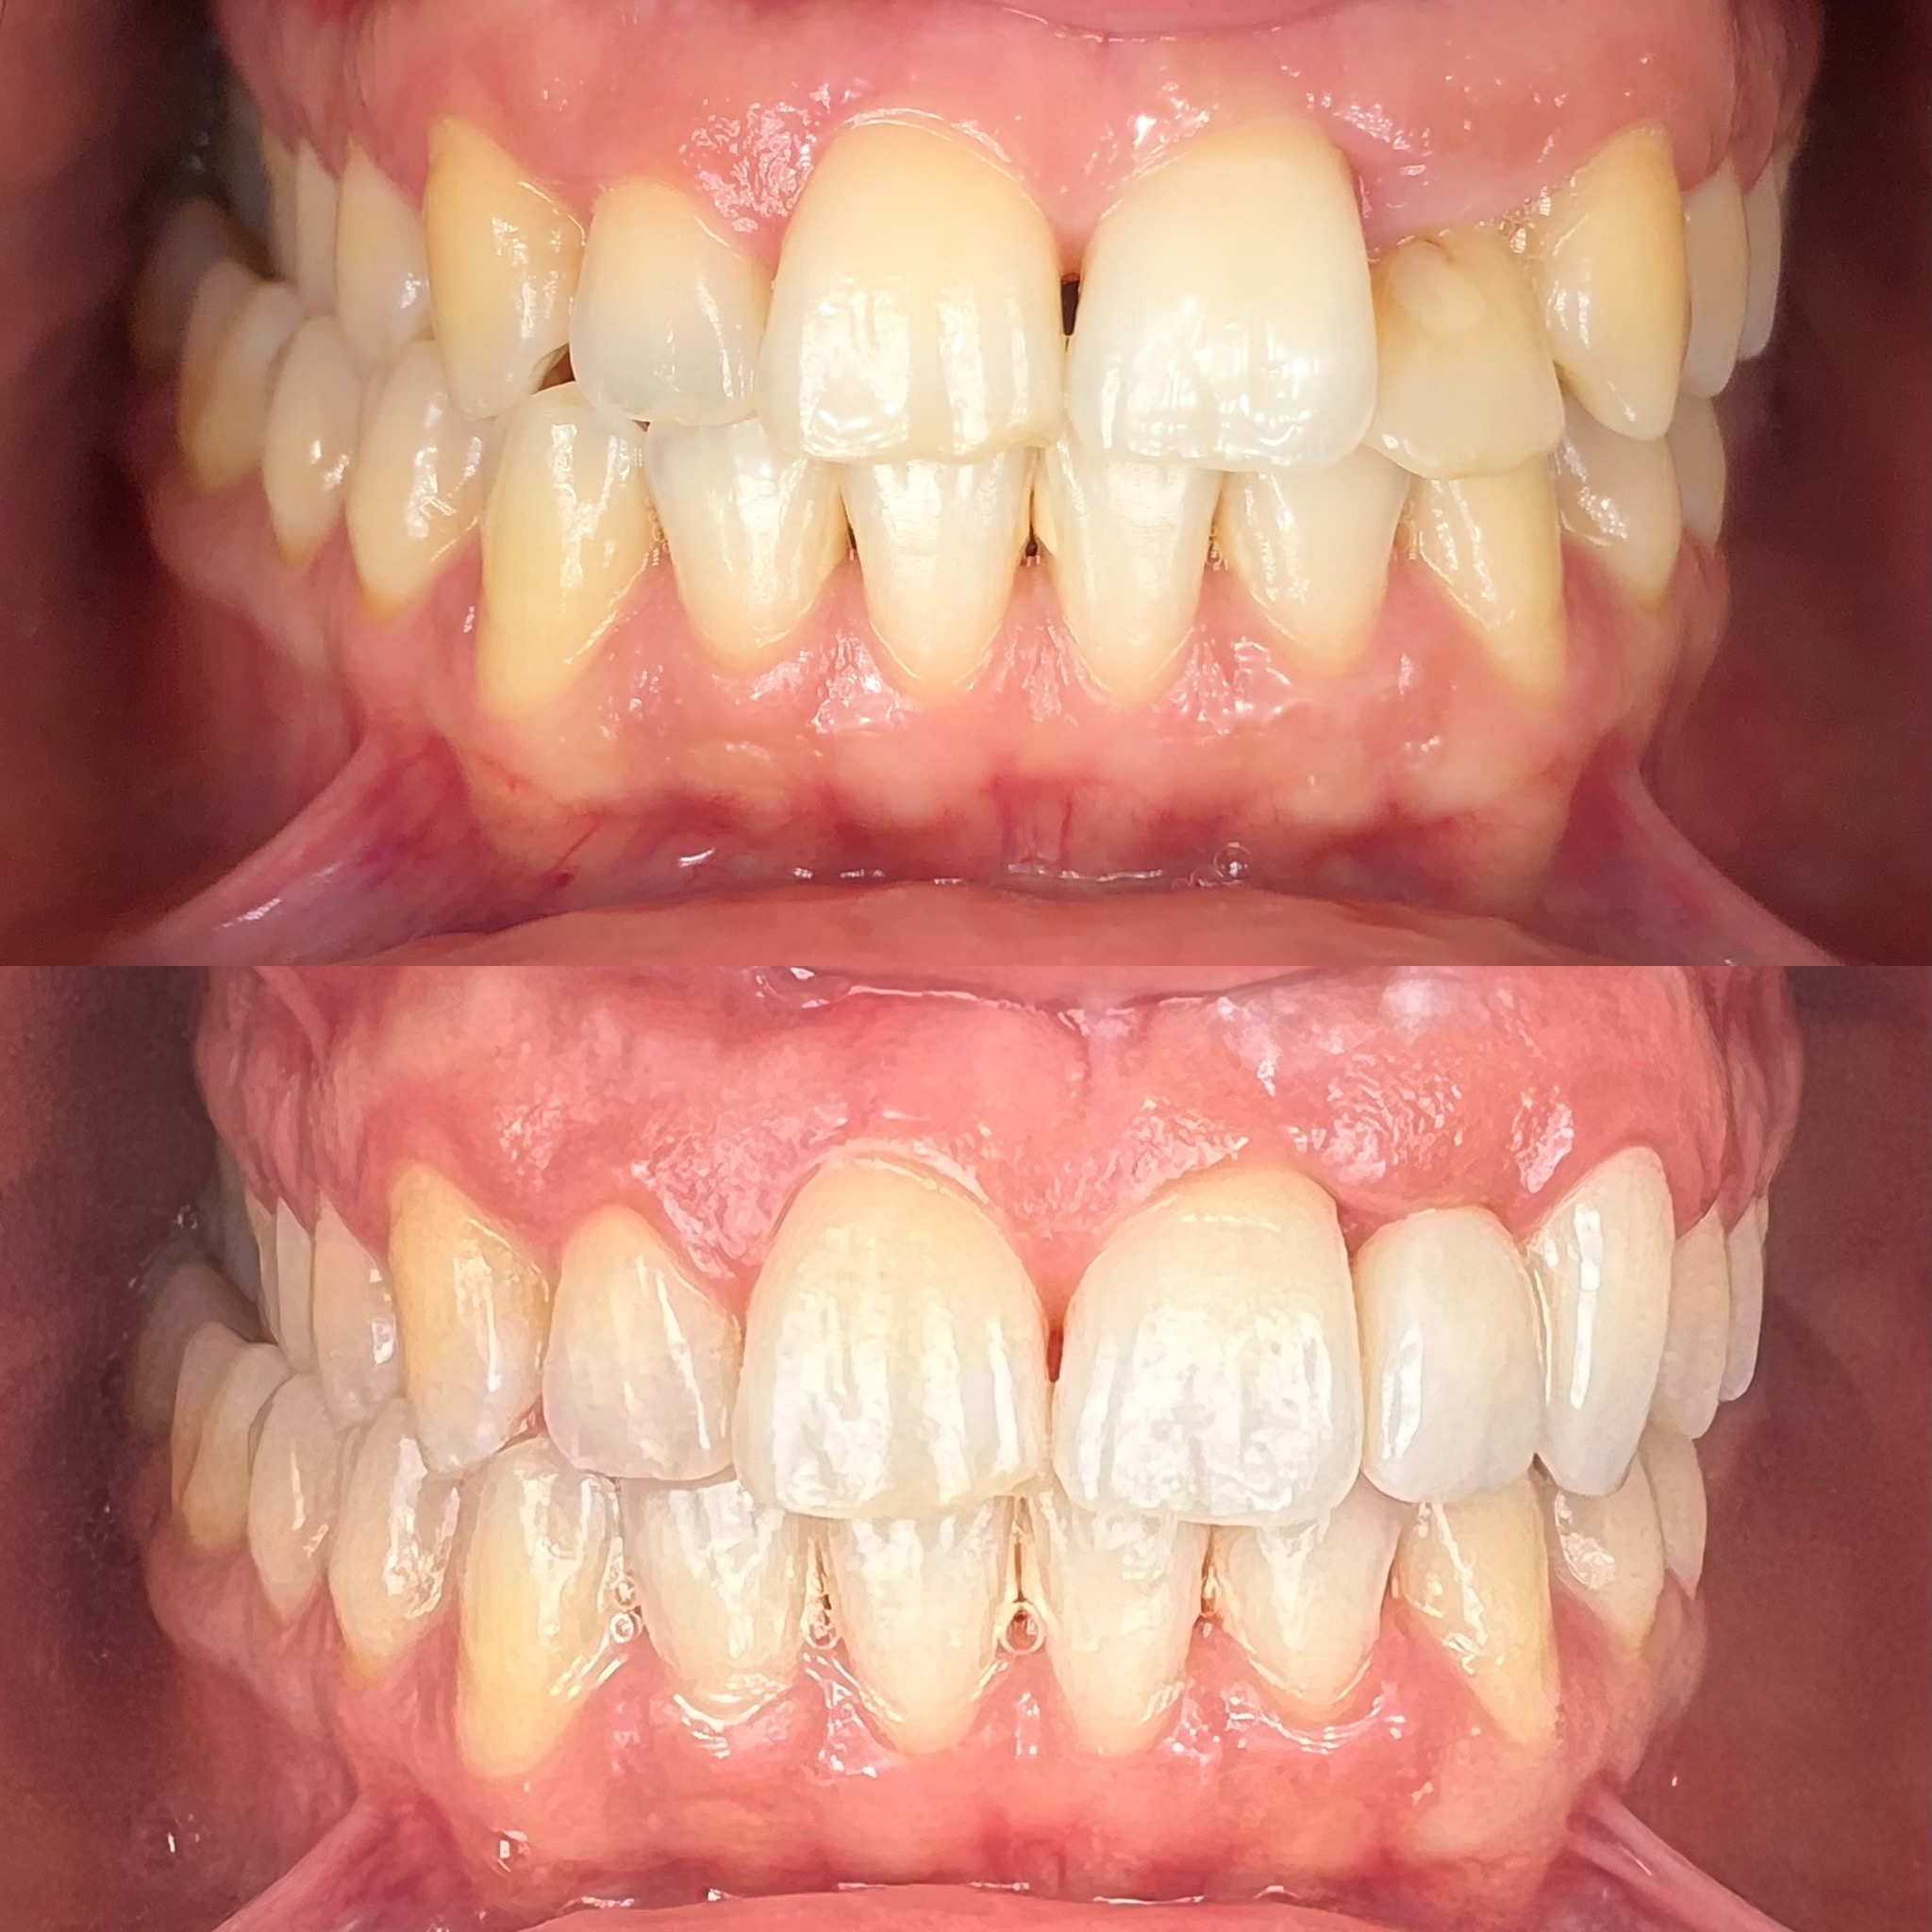 permanent dental implant patient